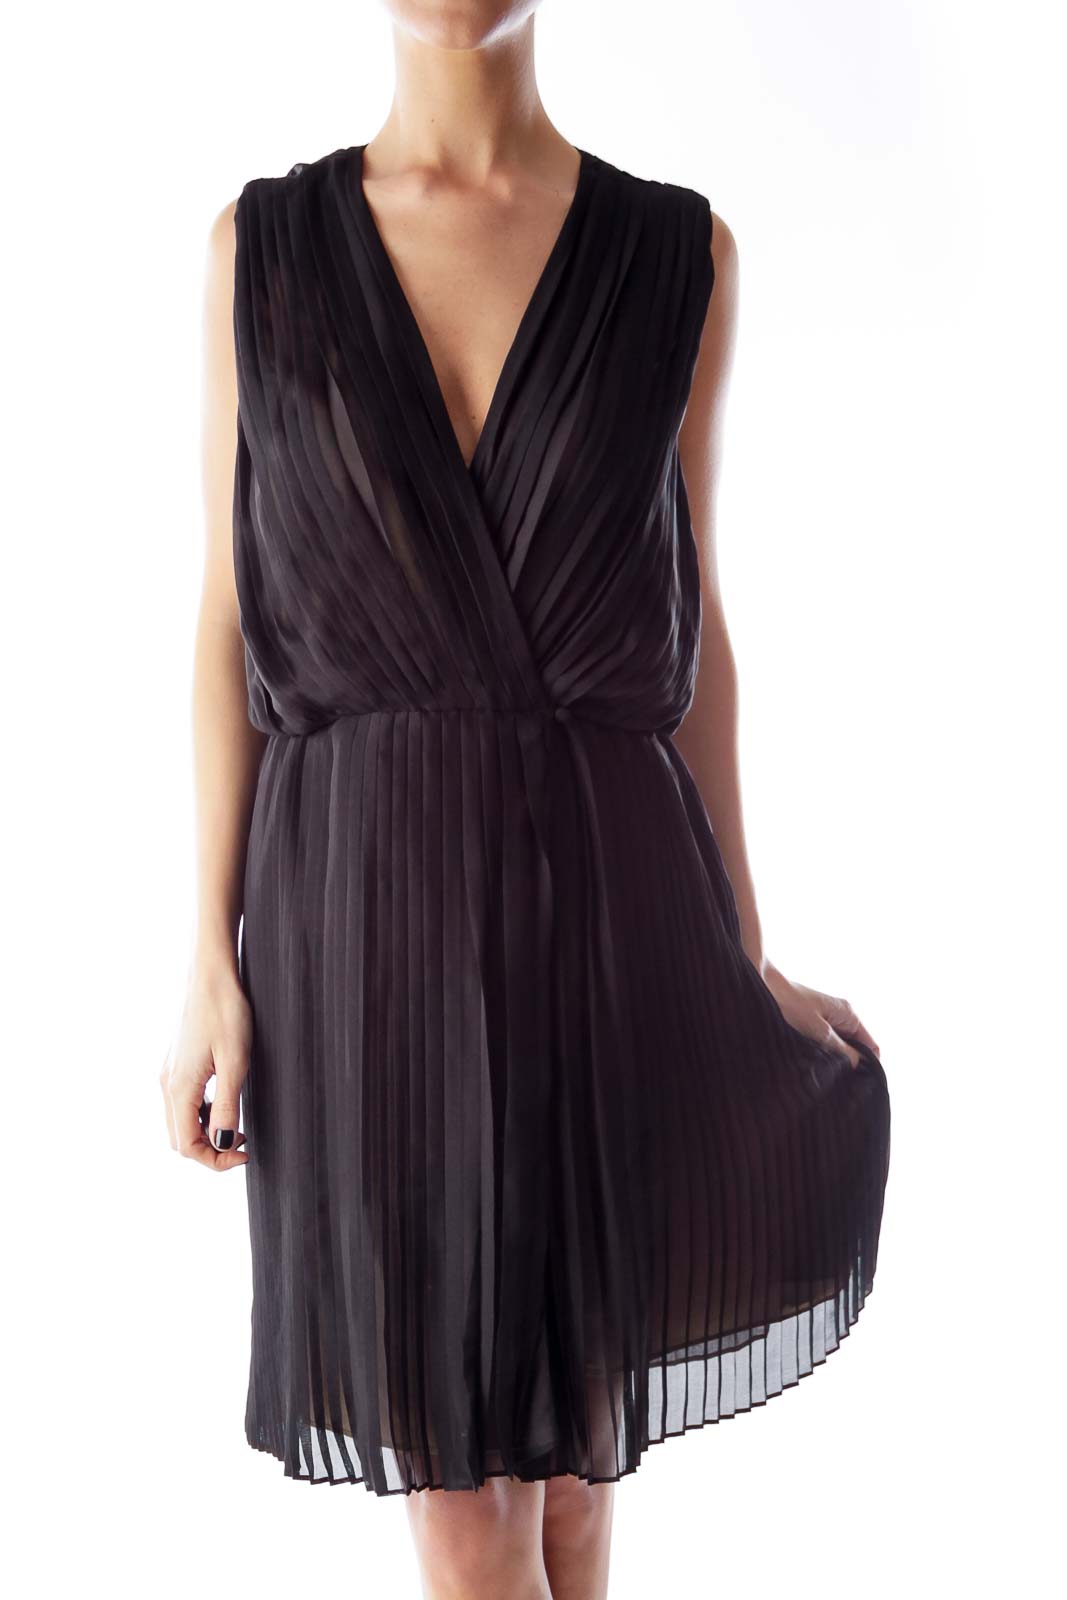 Black Plaid Cocktail Dress Front